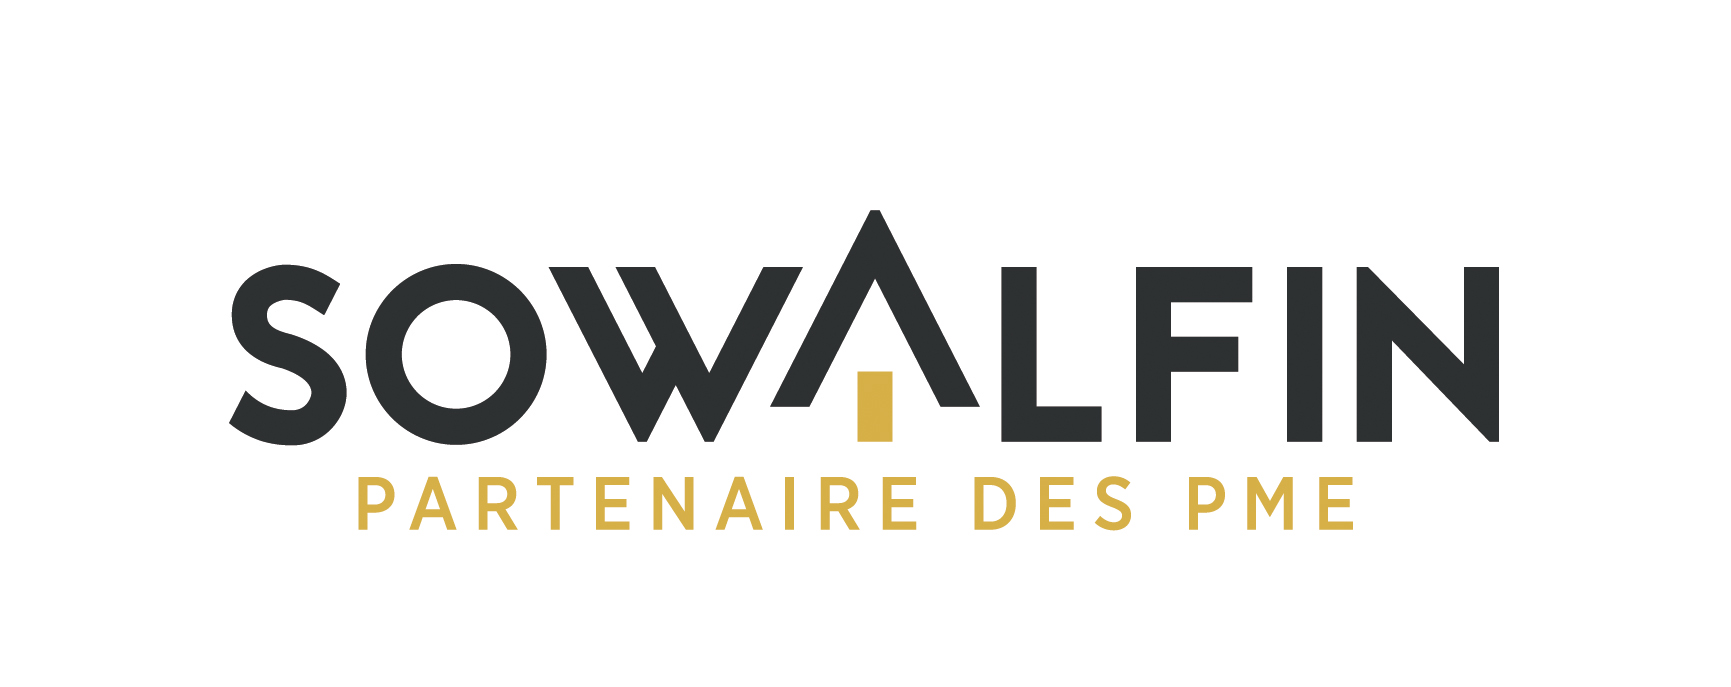 Logo Sowalfin